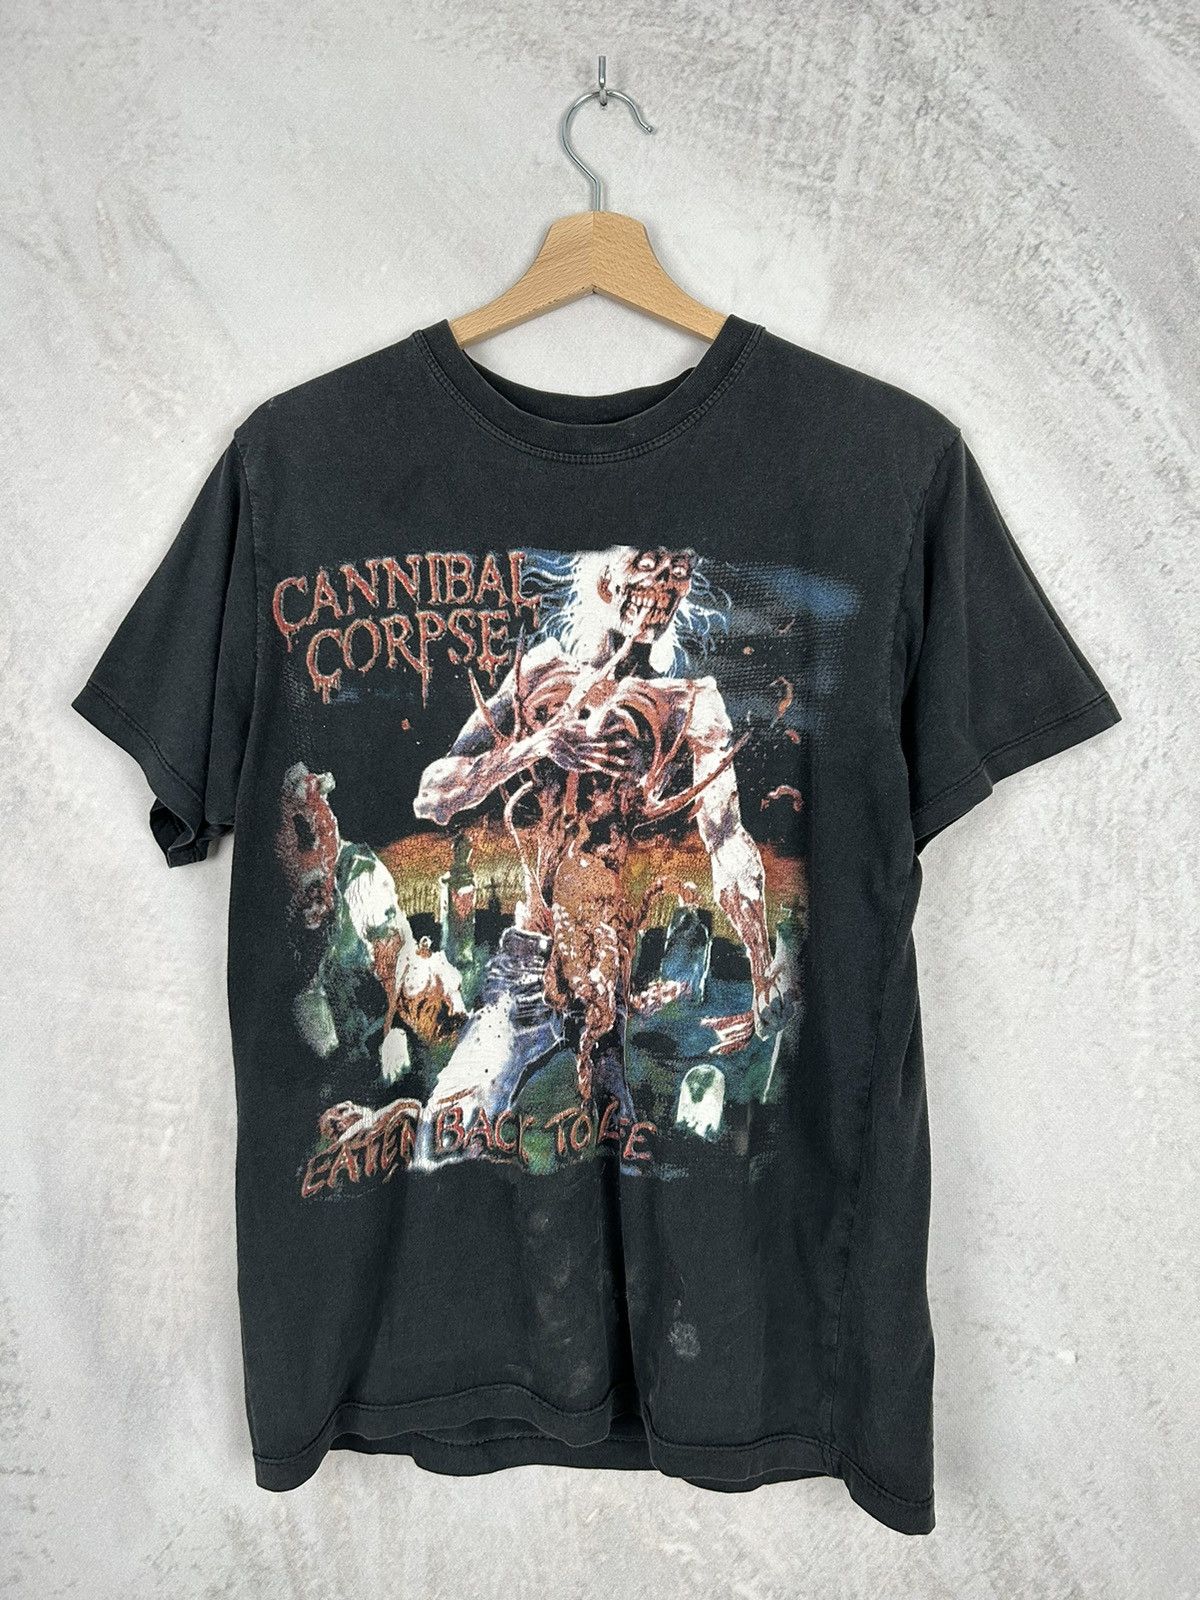 春新作の cannibal shirt corpse vile cannibal vintage shirt Shirt ...